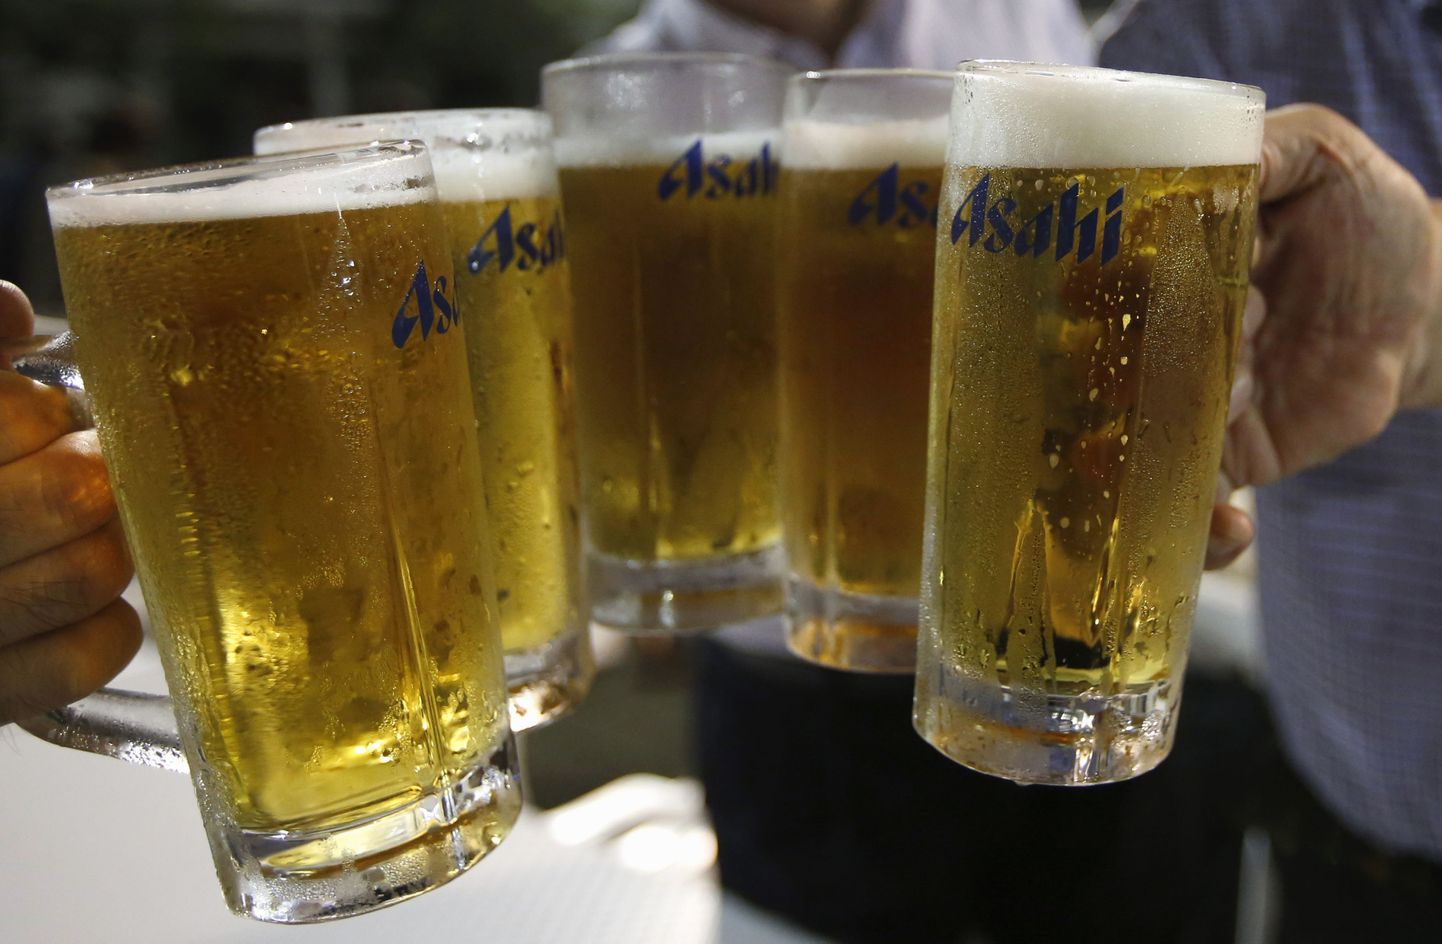 Miks õlle joomine võib olla ohtlik?